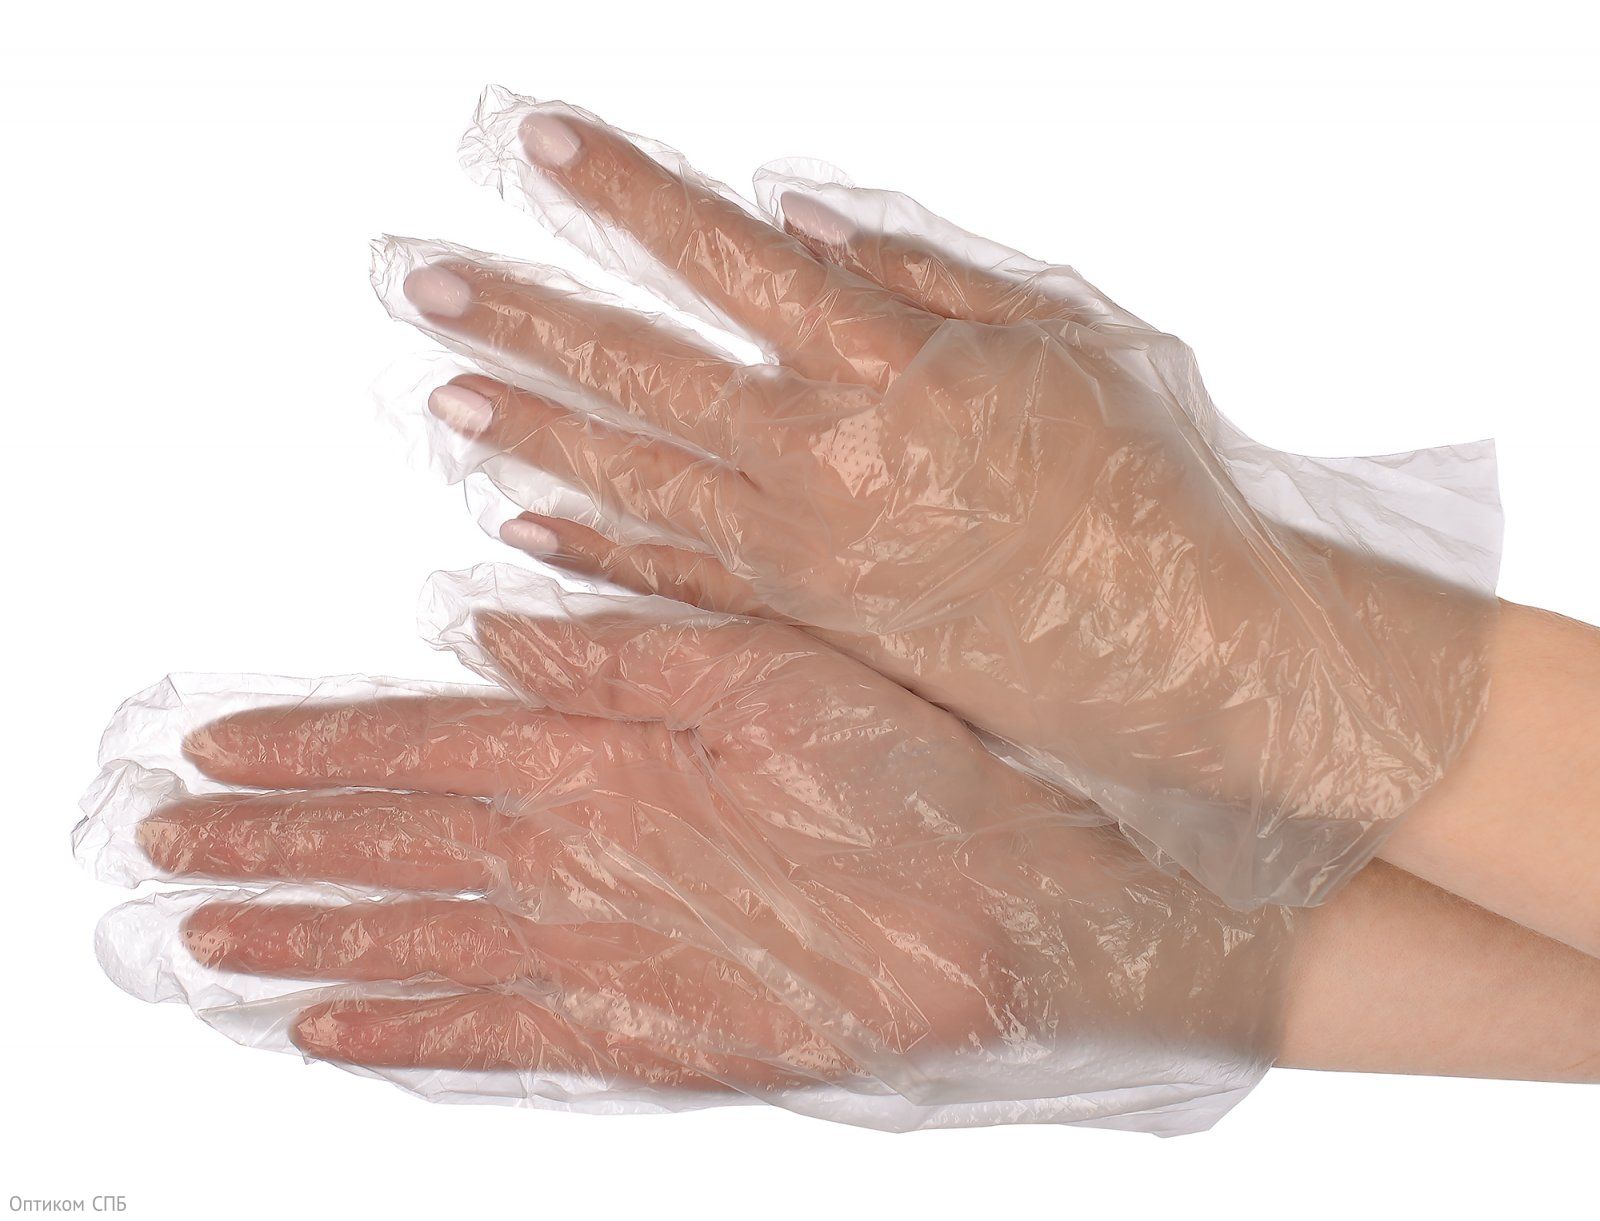 Перчатки полиэтиленовые одноразовые Optiline предназначены для непродолжительного использования. Изготовлены из полиэтилена низкого давления. Гипоаллергенны, могут контактировать с продуктами питания. Не имеют разделения на левую и правую руку. Неплотно облегают руку. Прозрачные. Размер М. В упаковке 100 штук.